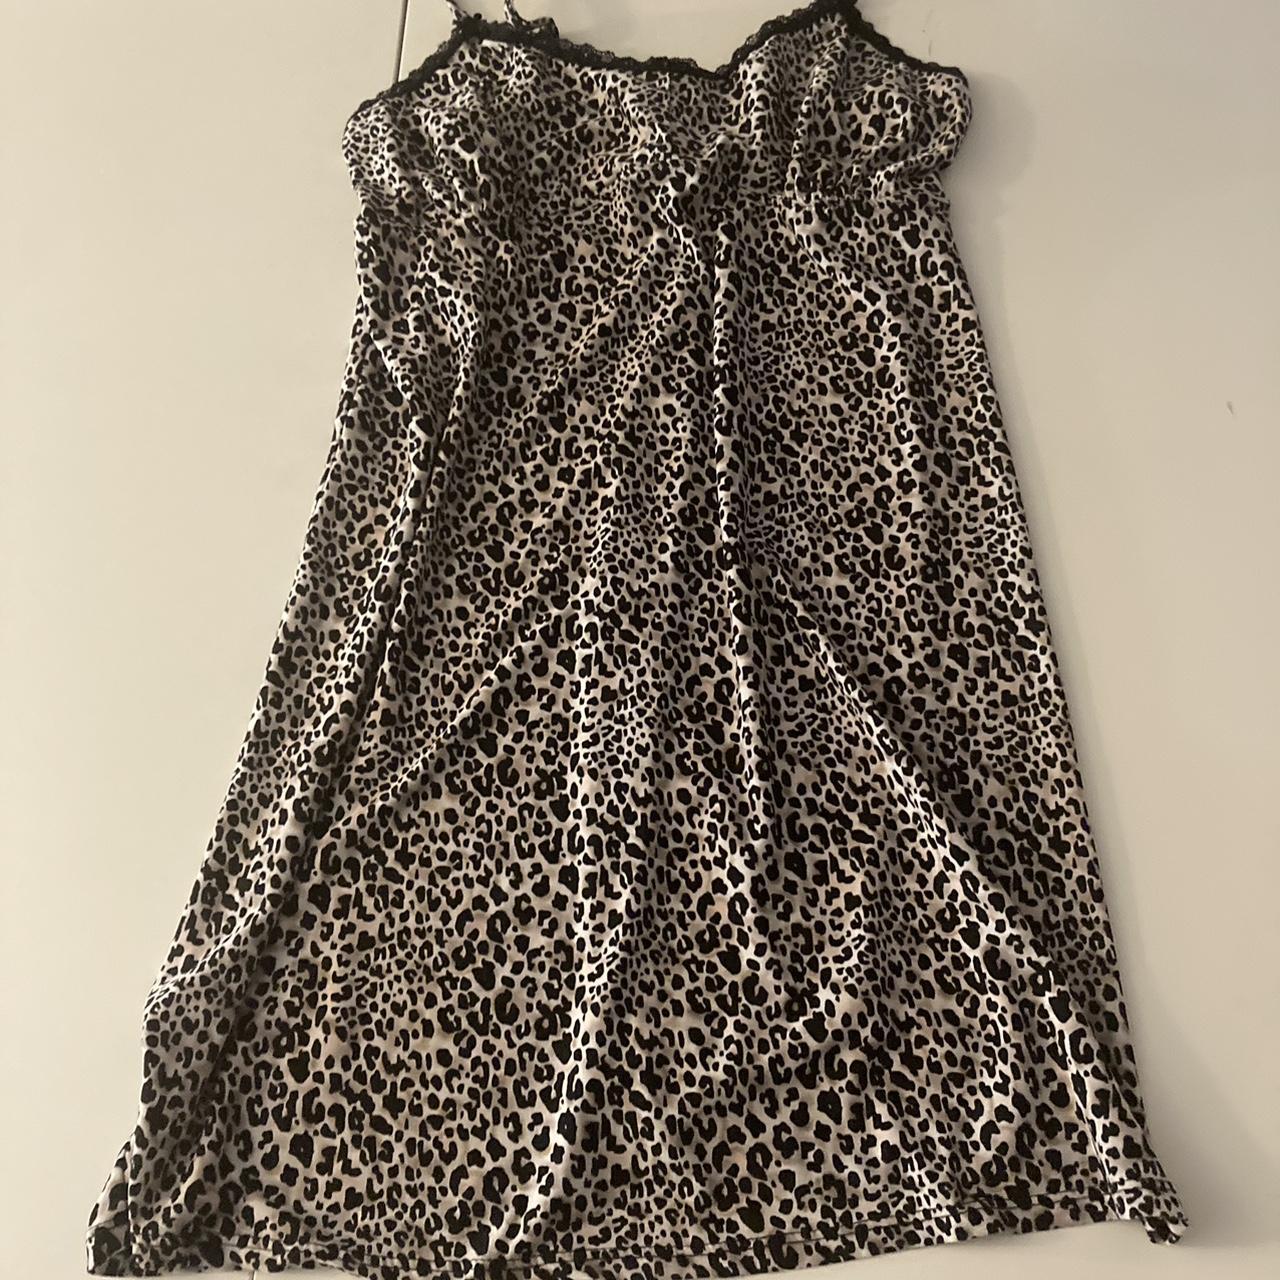 Rene Rofe Leopard print sleepwear/lingerie black & white slip dress Leopard  SZ L